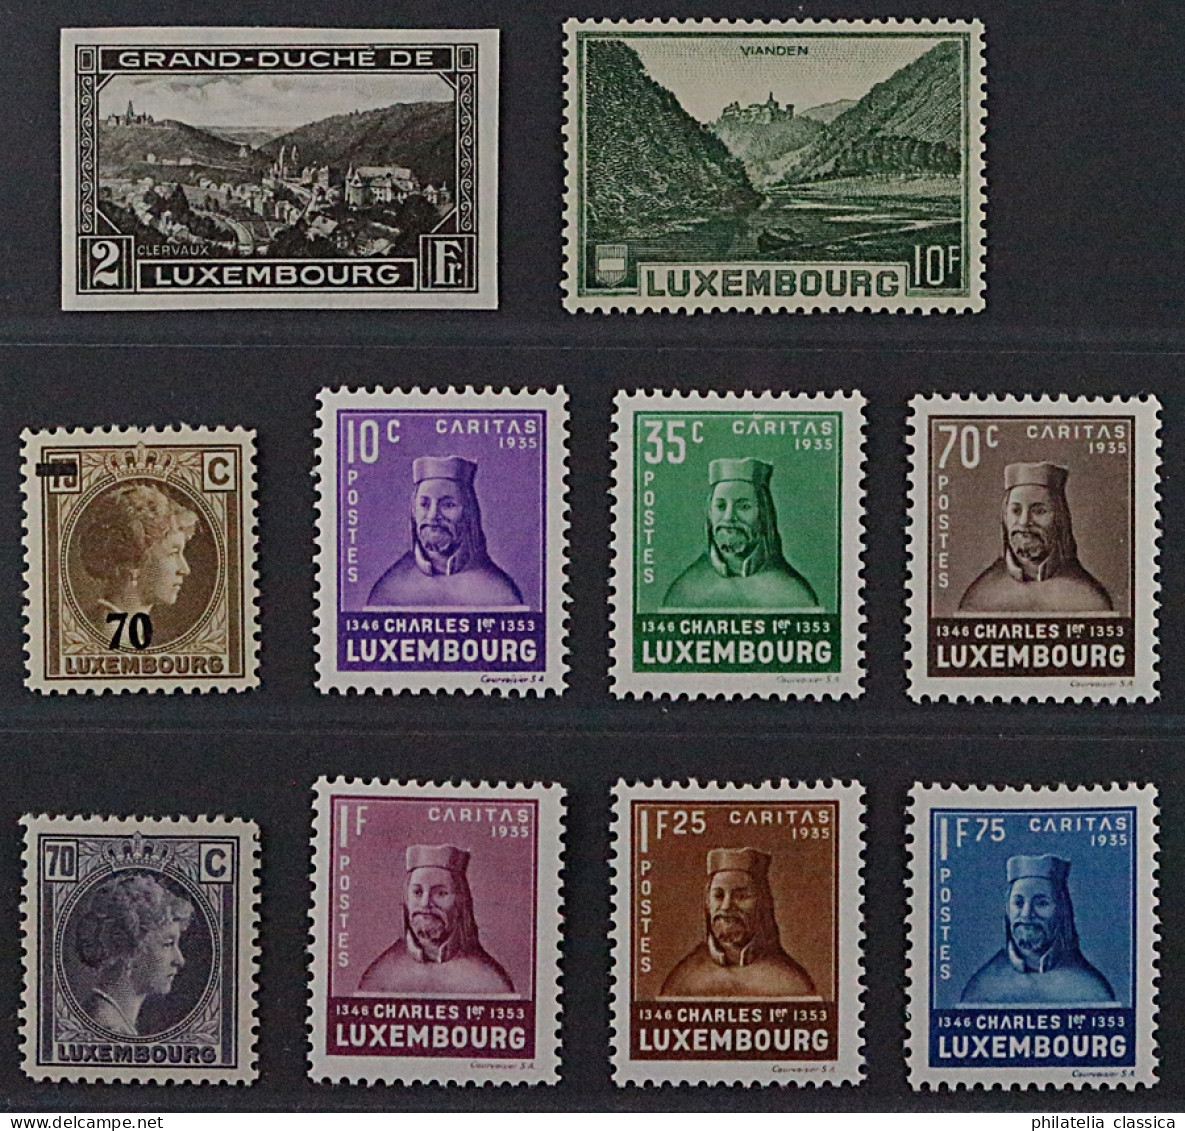 Luxemburg  265, 281-89 ** Gesuchte Serien Komplett, Postfrisch, KW 174,- € - 1852 Wilhelm III.